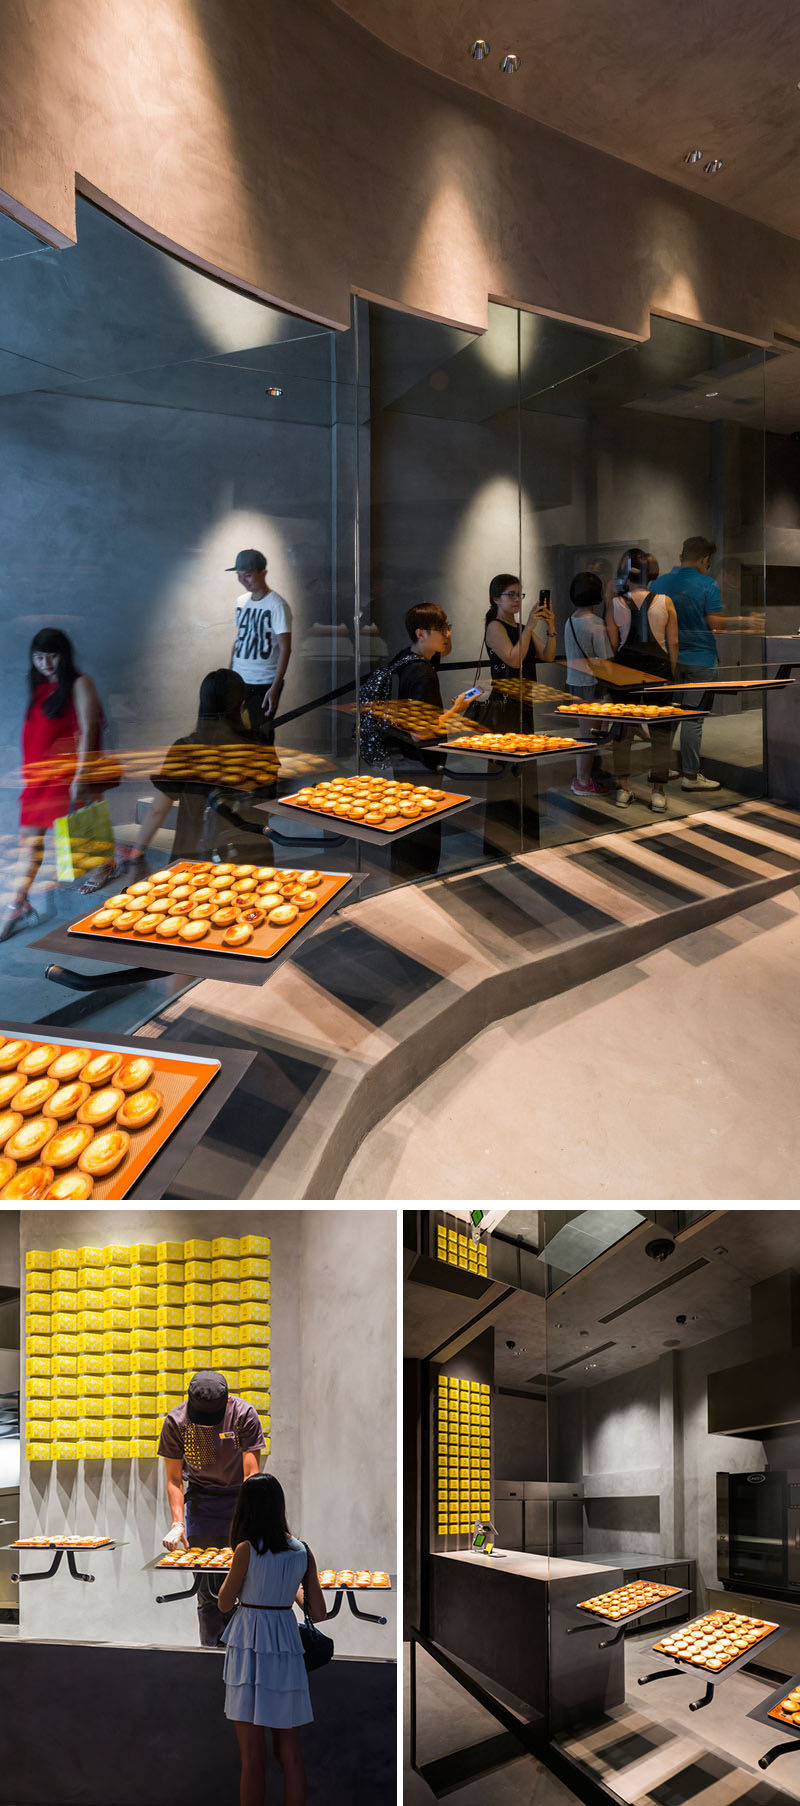  В этой современной пекарне большие стеклянные окна, выходящие на лестницу, позволяют увидеть сырные пироги для людей, которые выстраиваются в очередь, чтобы их купить. # Пекарня #ModernStore #RetailDesign 